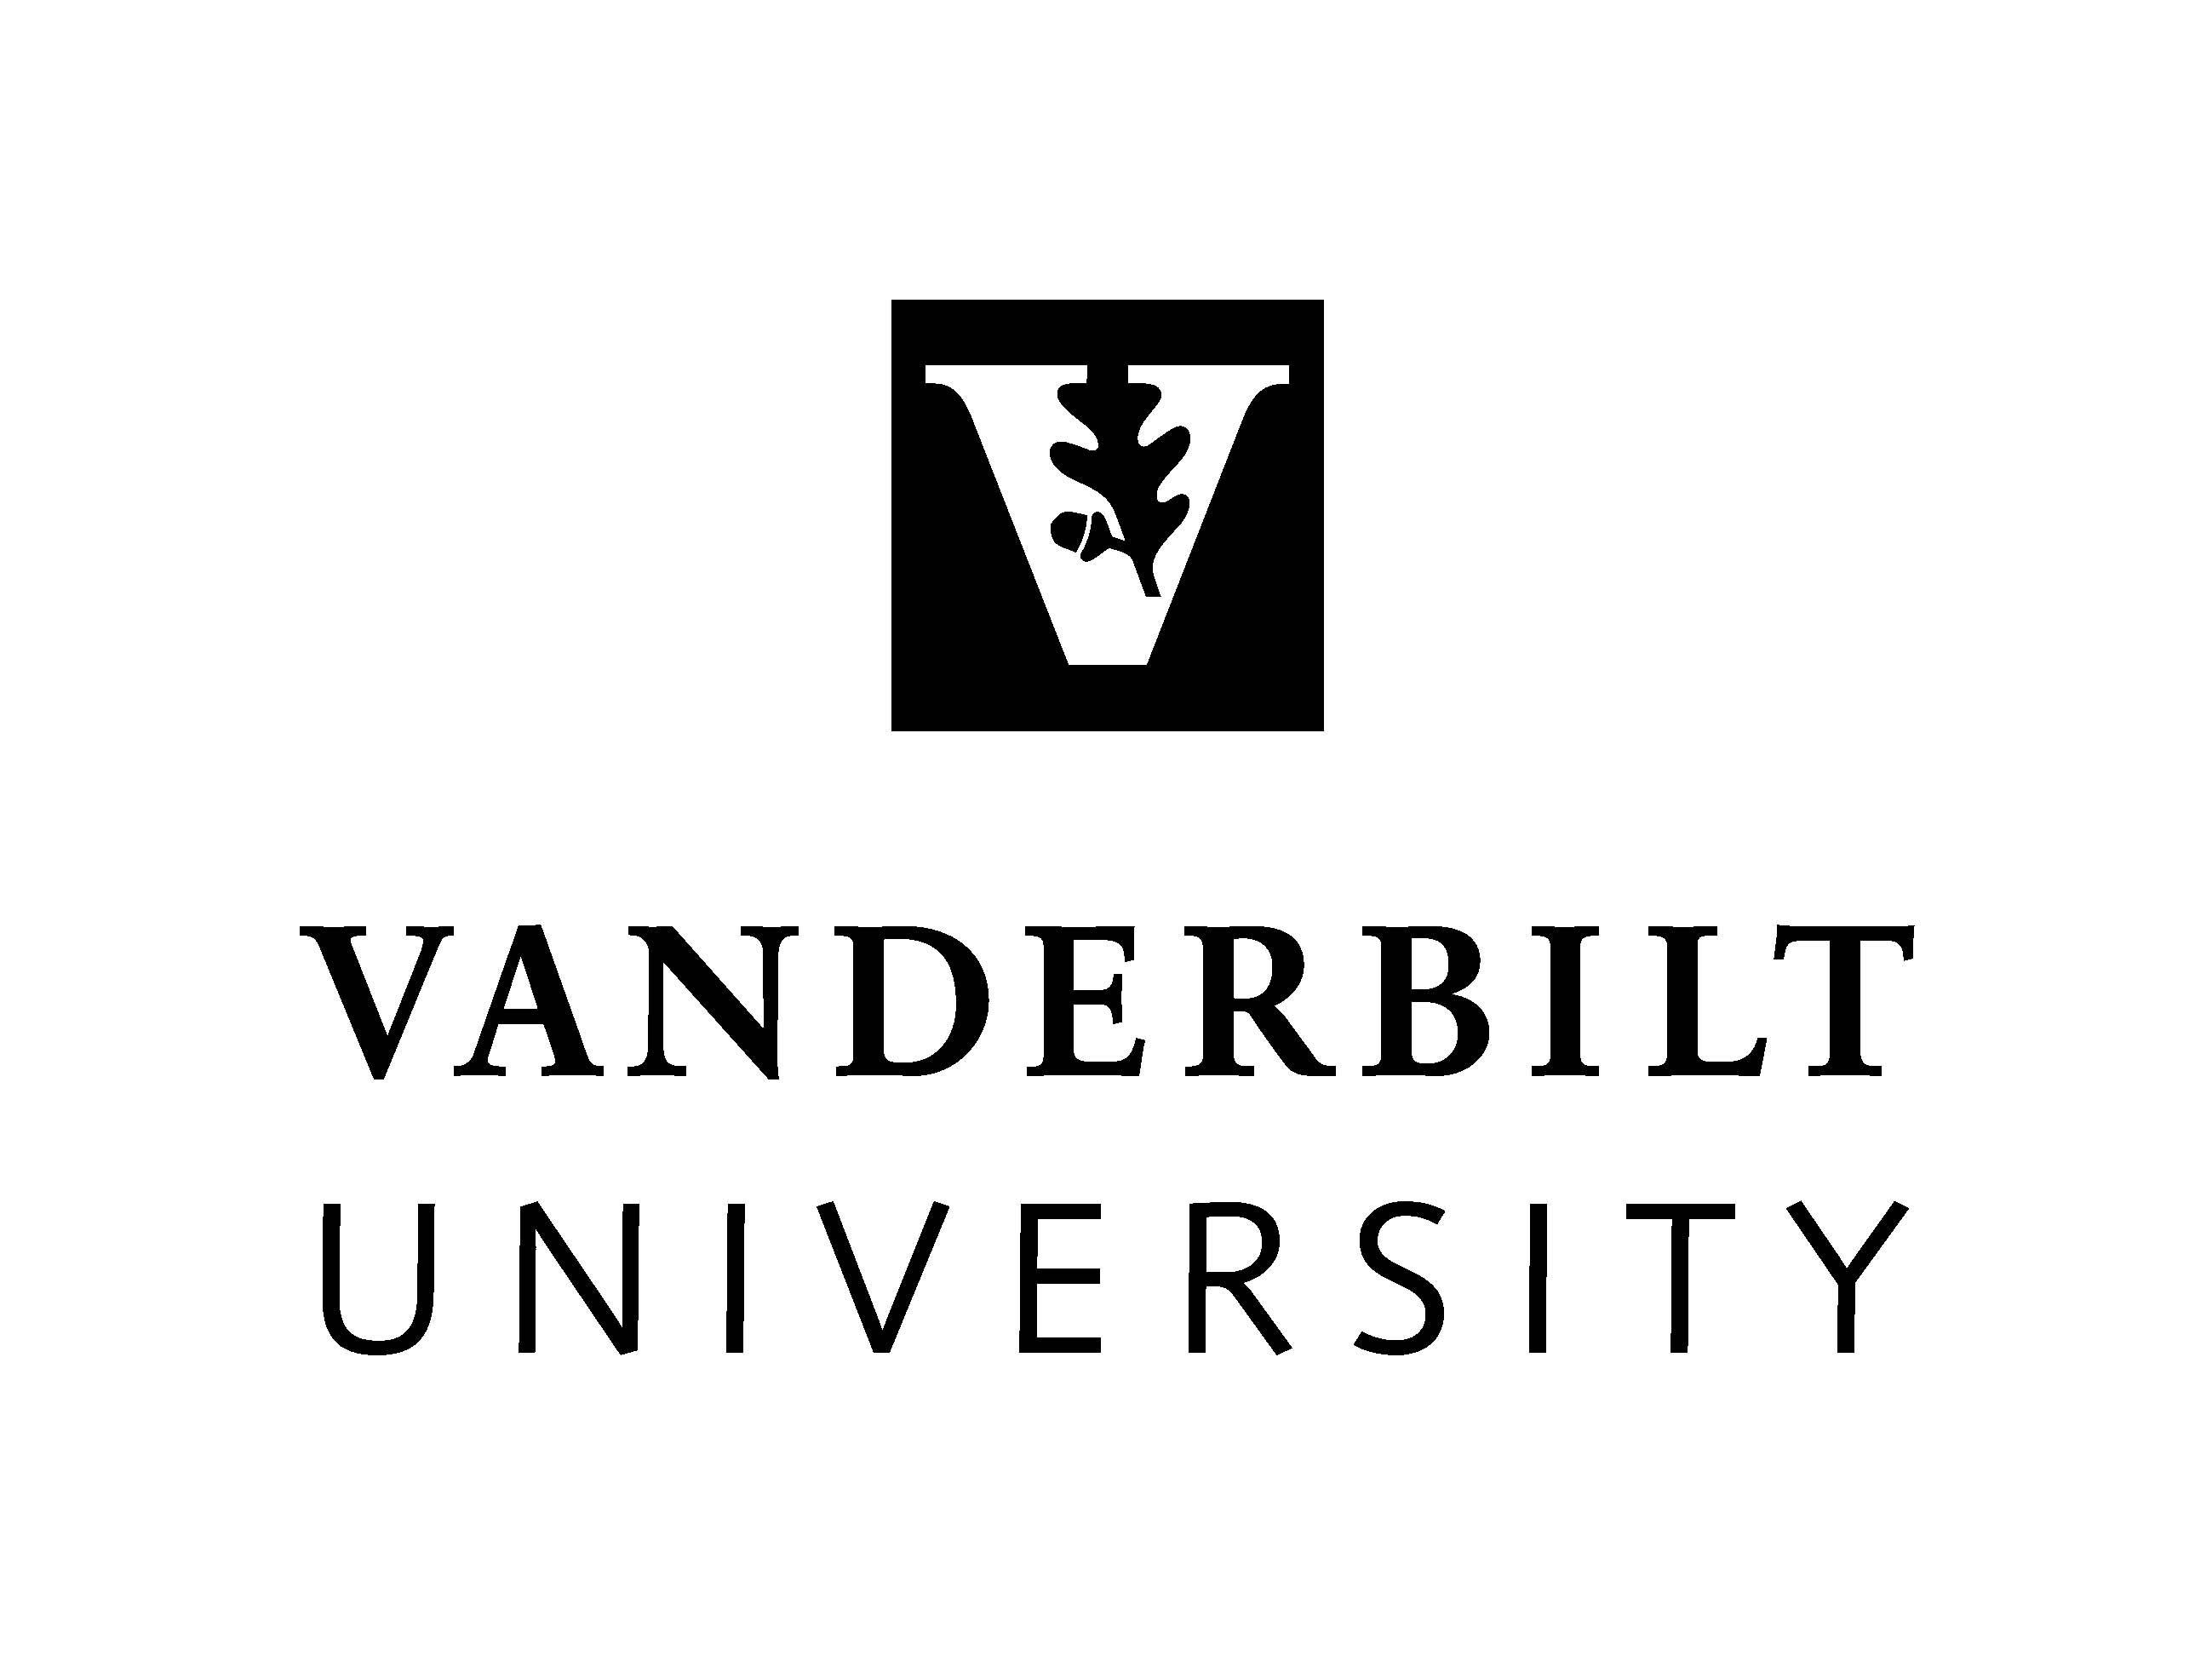 Vanderbilt University Logo - Official Vanderbilt University Logos. Vanderbilt News. Vanderbilt